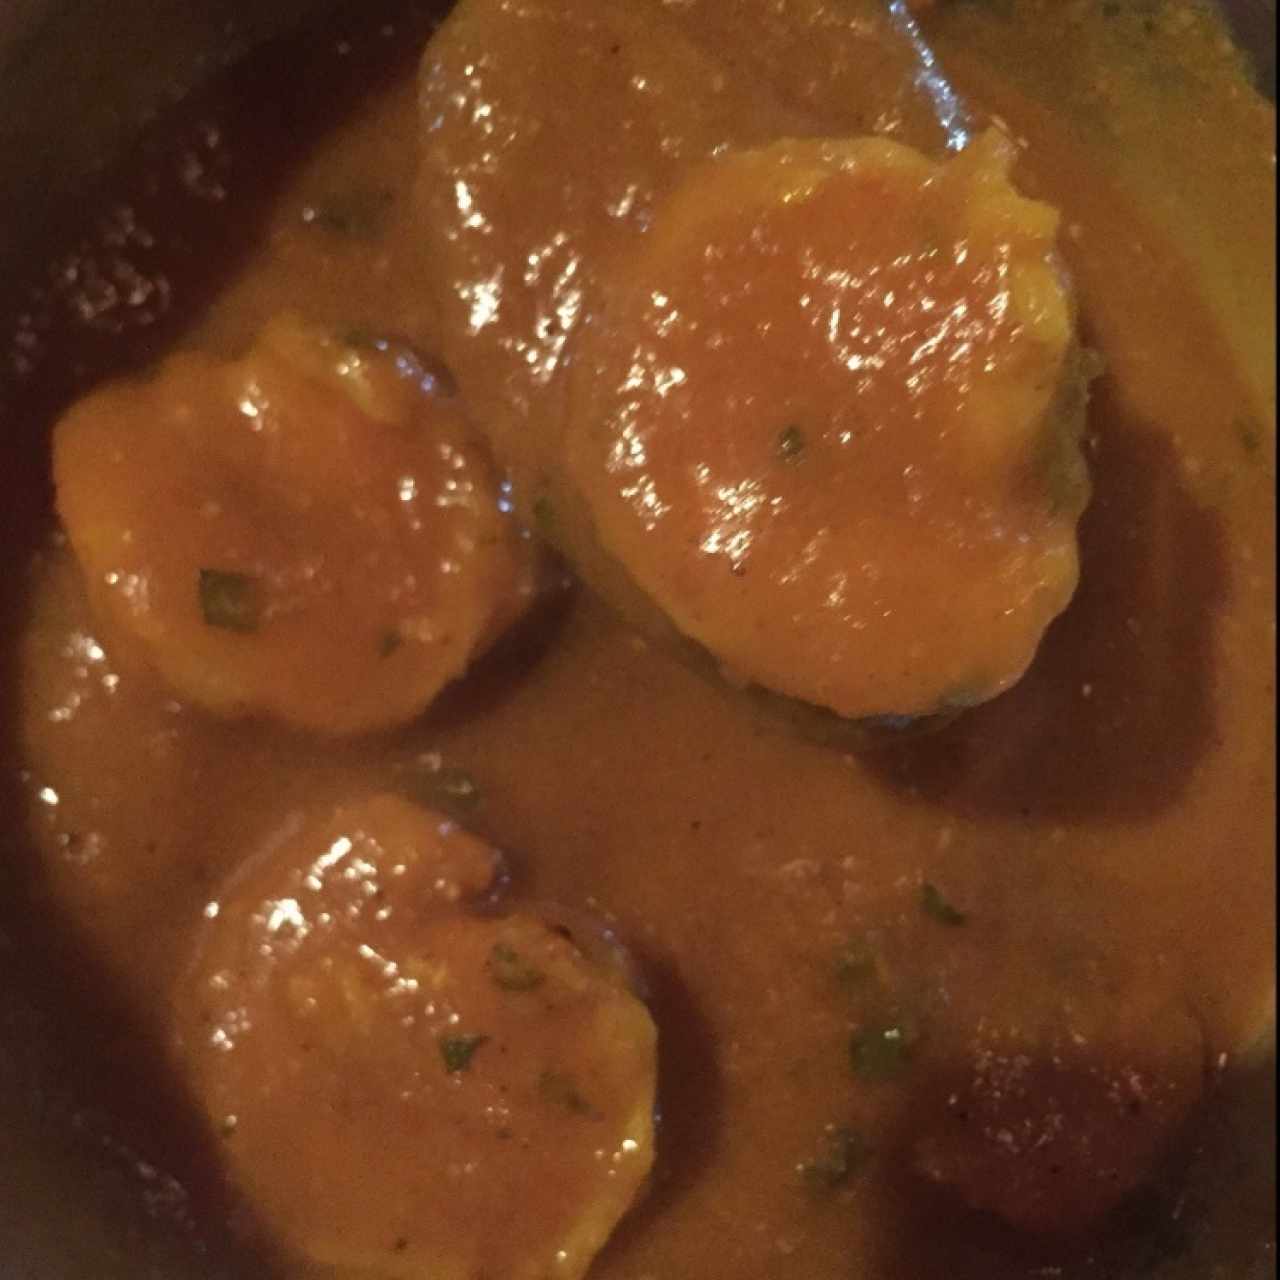 camarones al curry